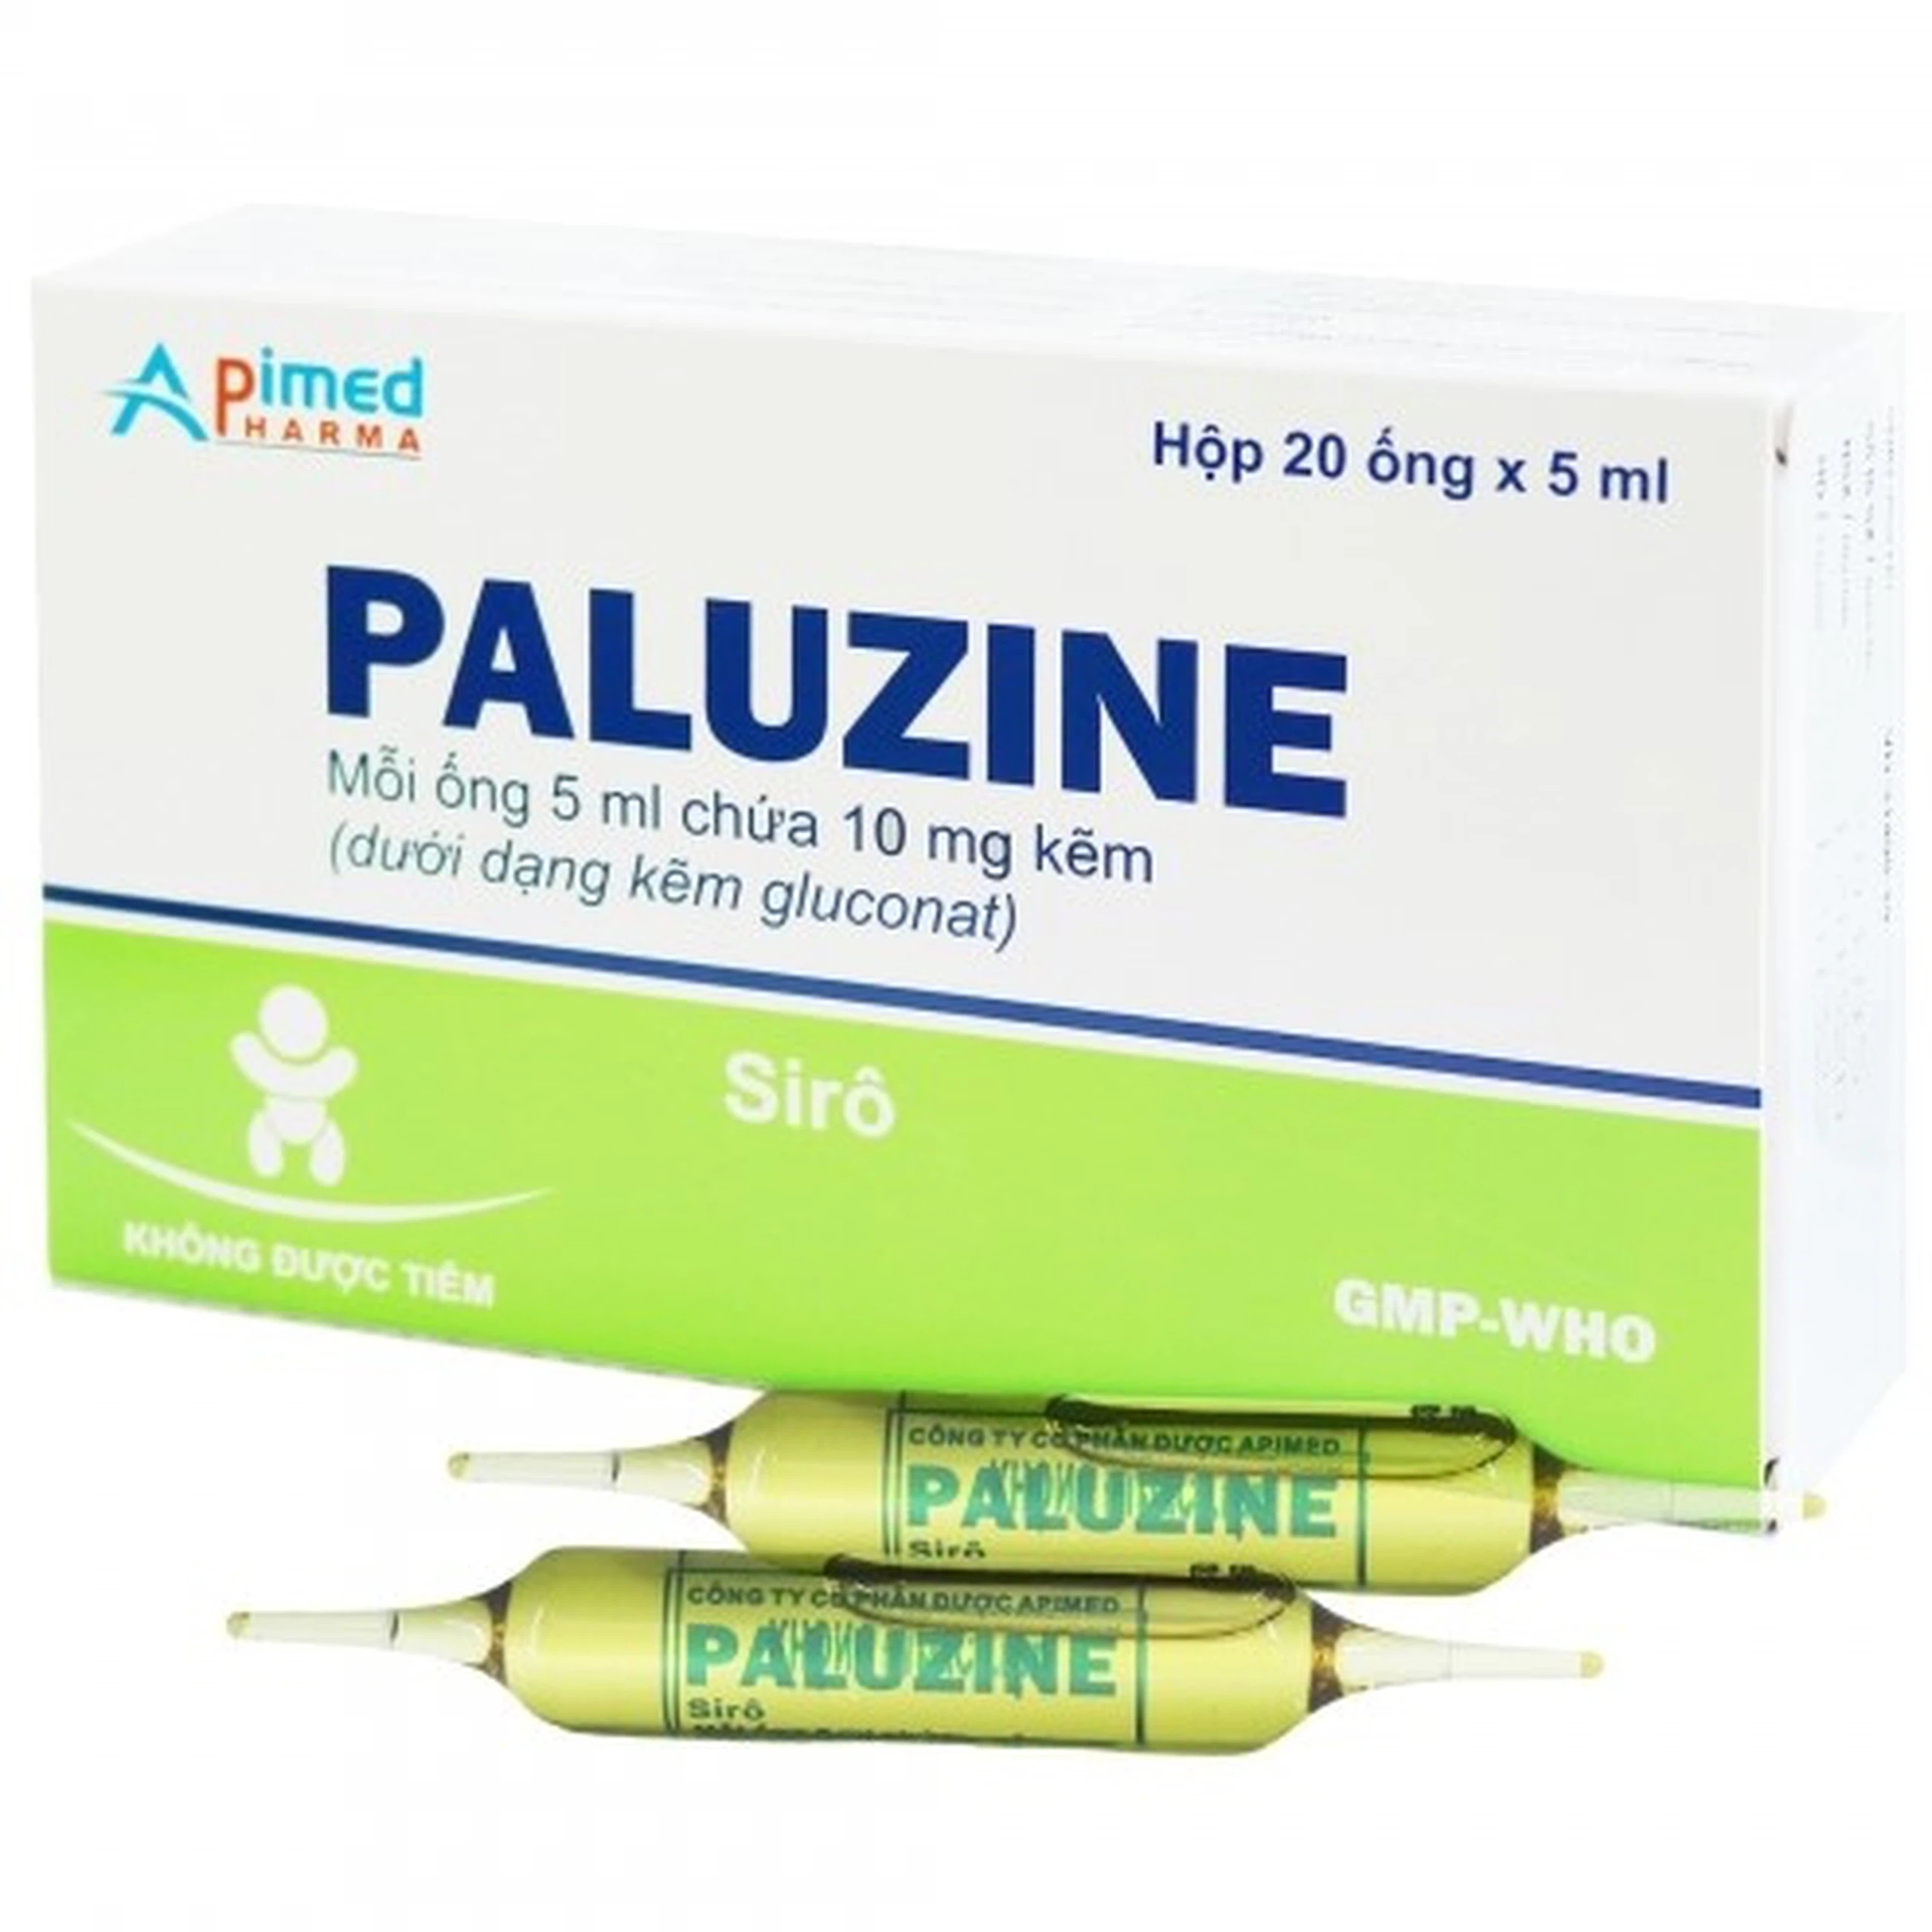 Thuốc Paluzine Apimed điều trị tiêu chảy kéo dài (20 ống x 5ml)